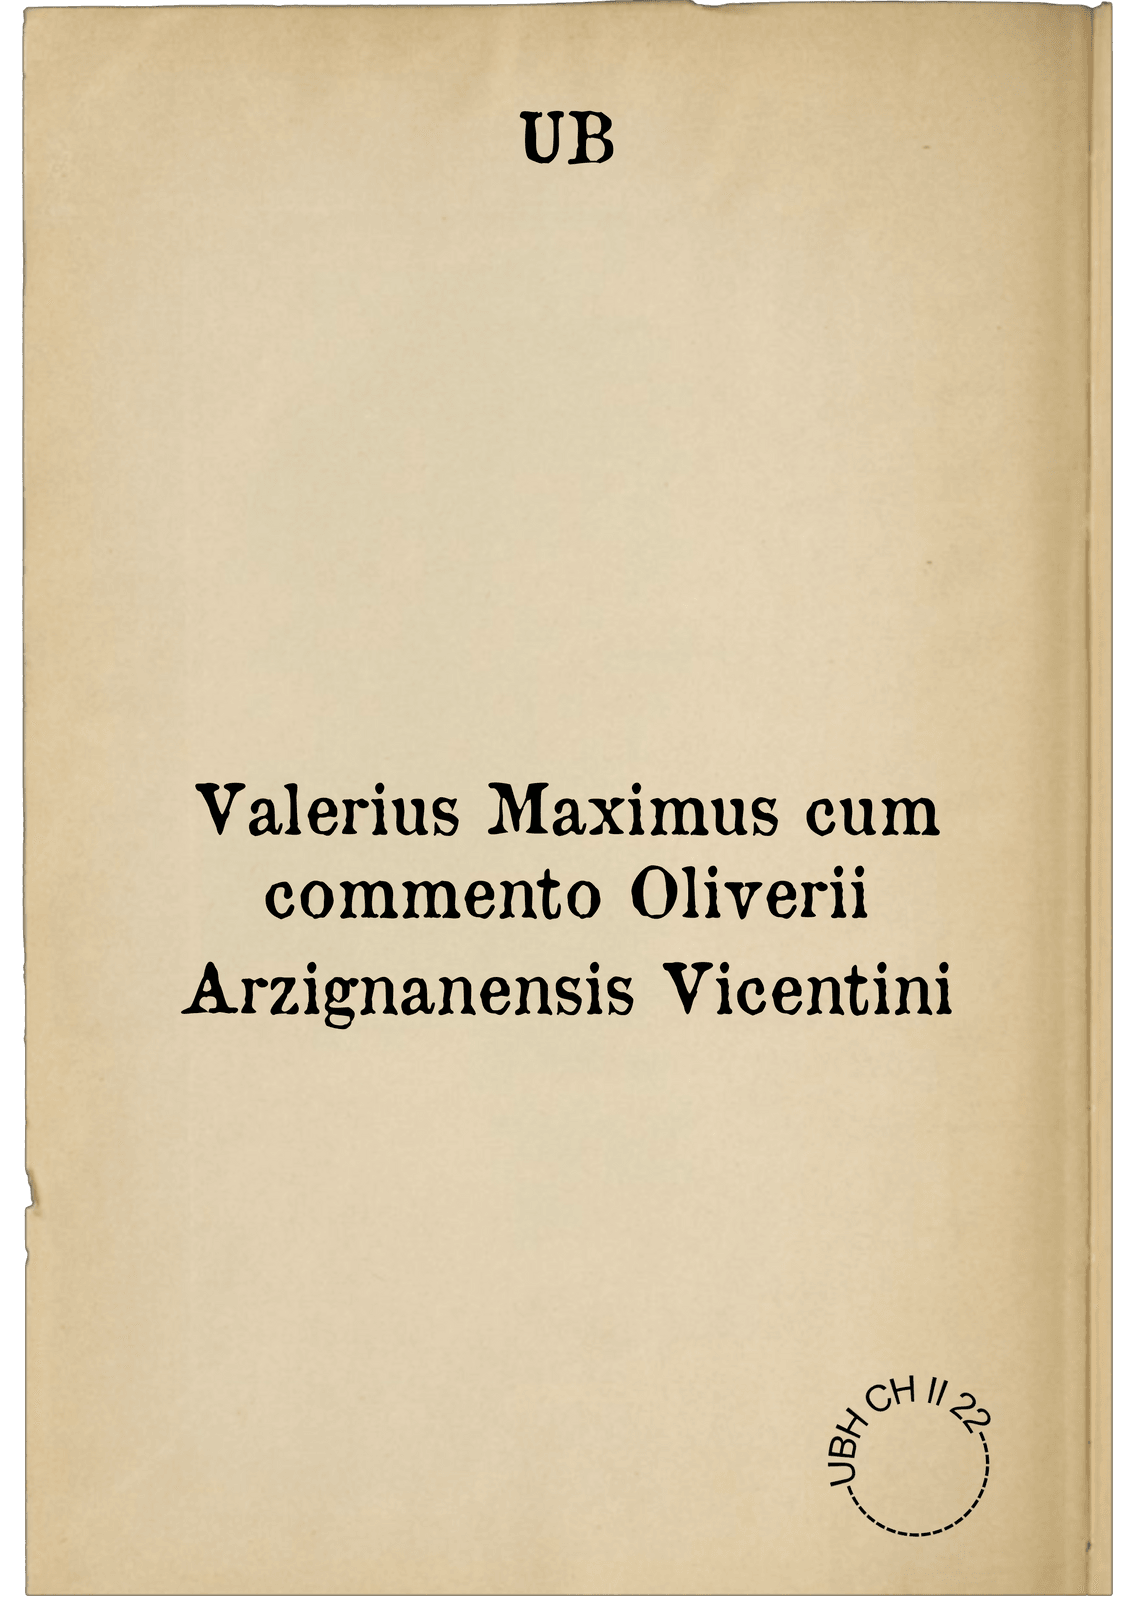 Valerius Maximus cum commento Oliverii Arzignanensis Vicentini